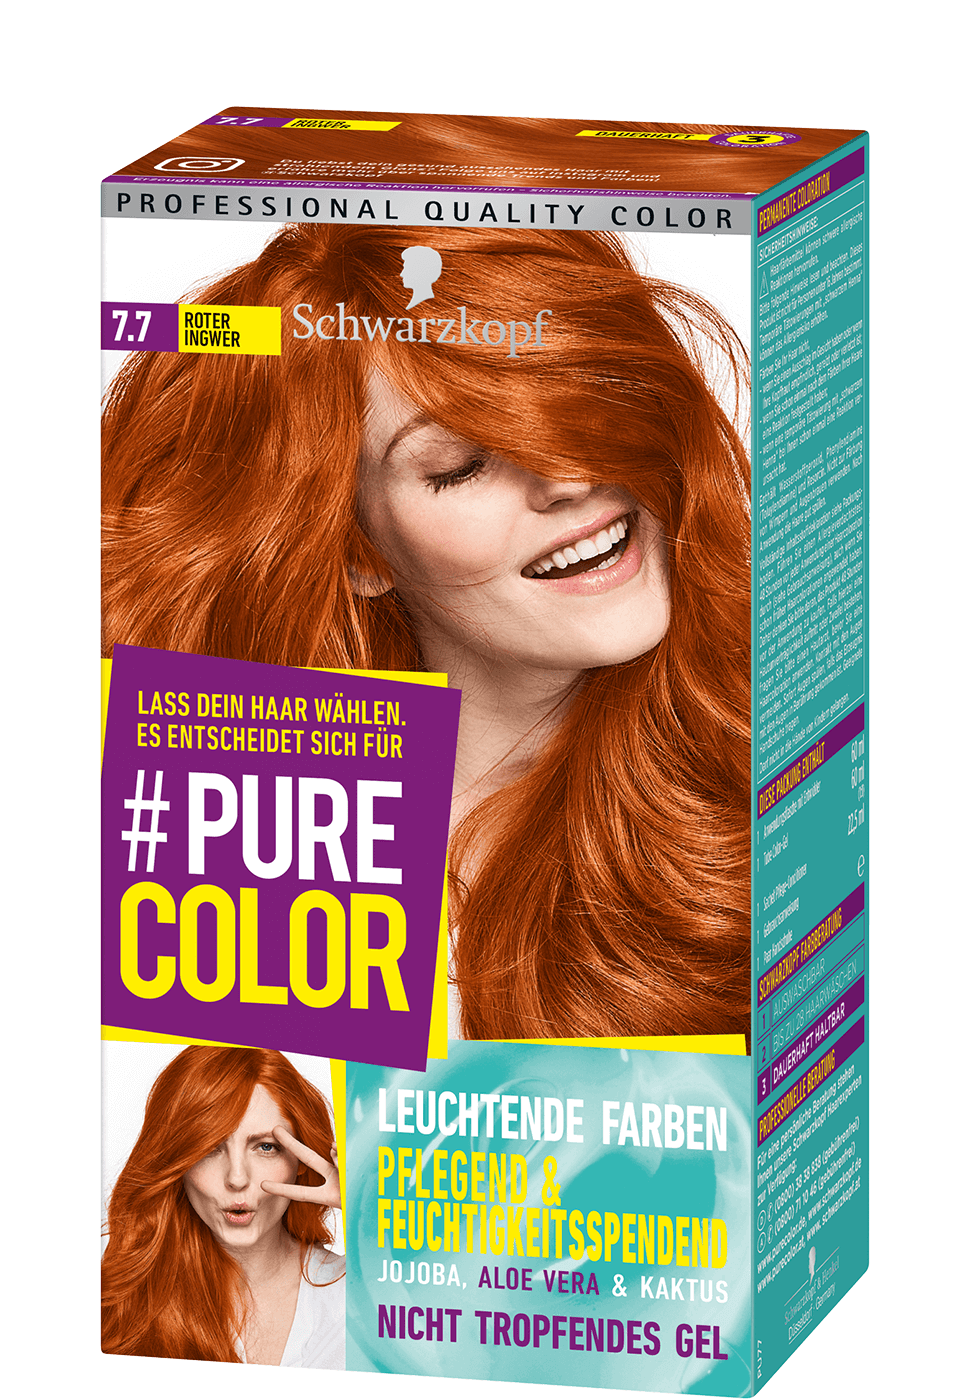 Haare Farben Extra Leicht Gemacht Die Gel Coloration